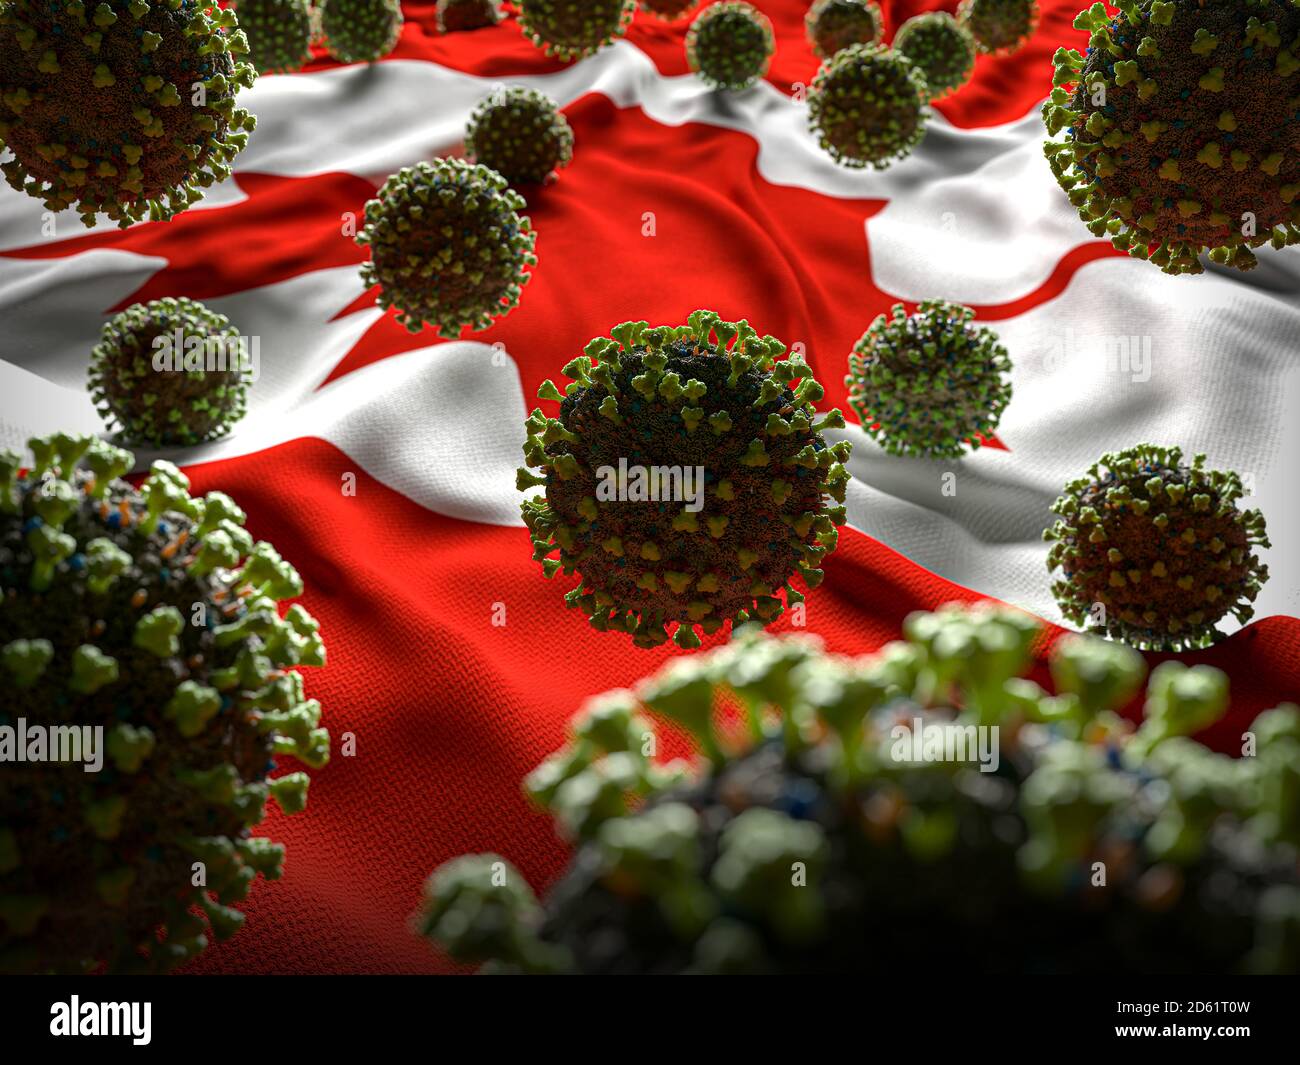 COVID-19 molecole di Coronavirus su bandiera canadese - risposta di crisi di salute Con aumento in casi COVID - Canada Virus Pandemic vittime Foto Stock